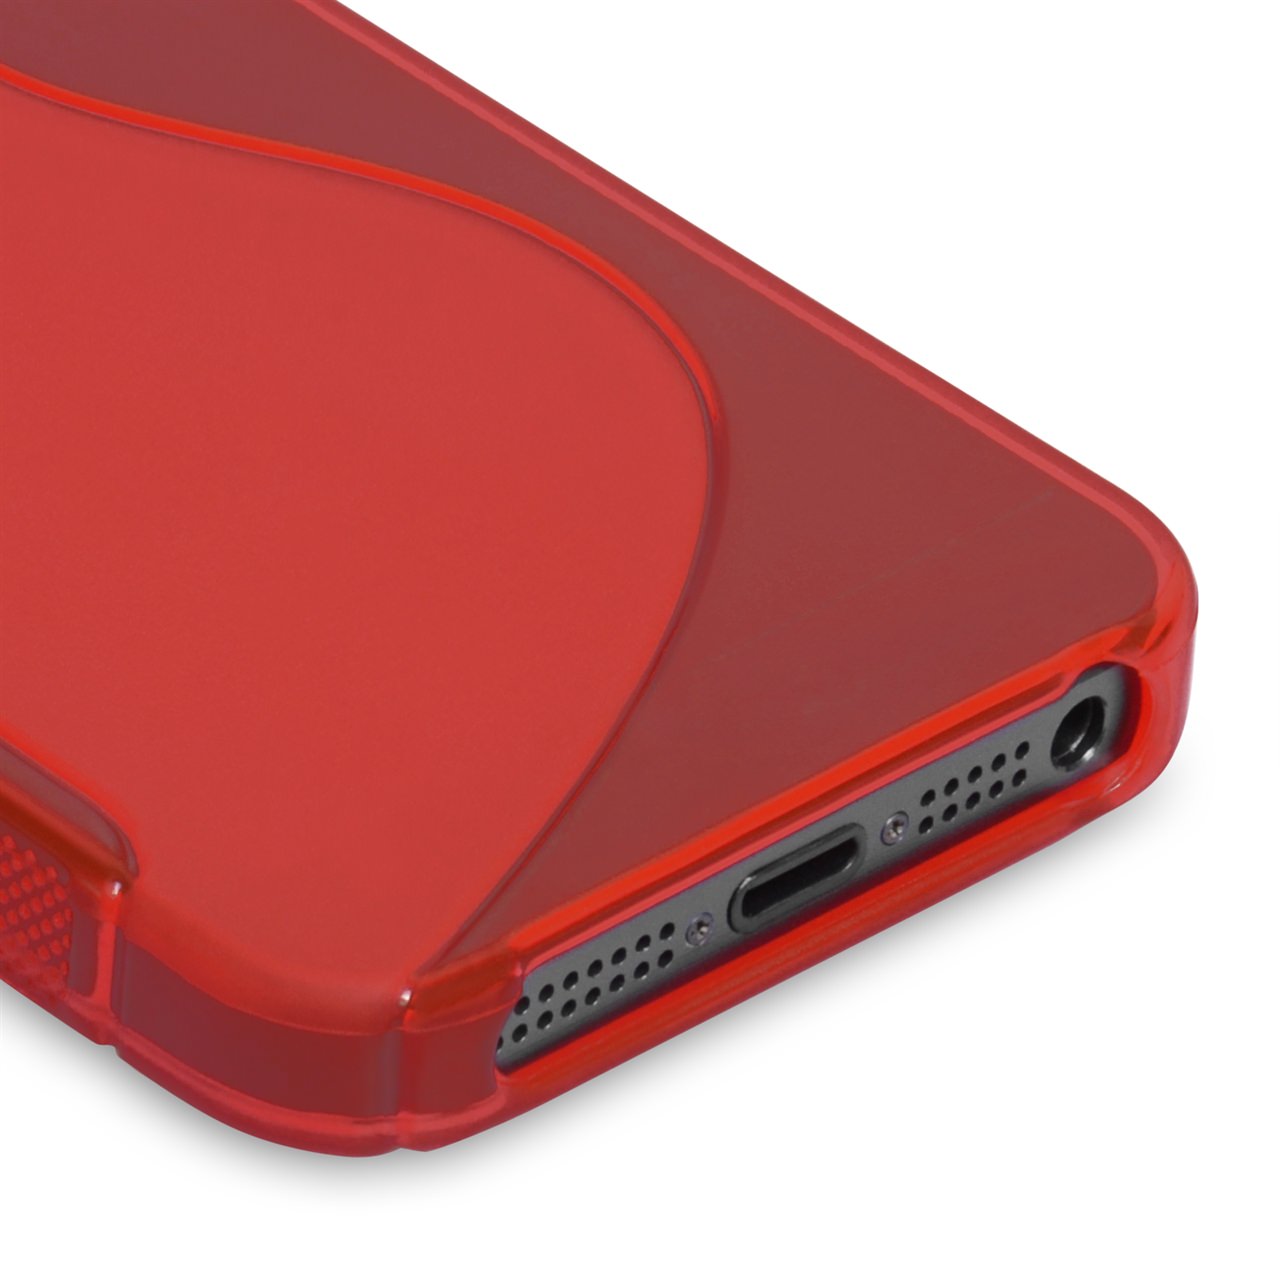 Caseflex iPhone SE S-Line Gel Case - Red